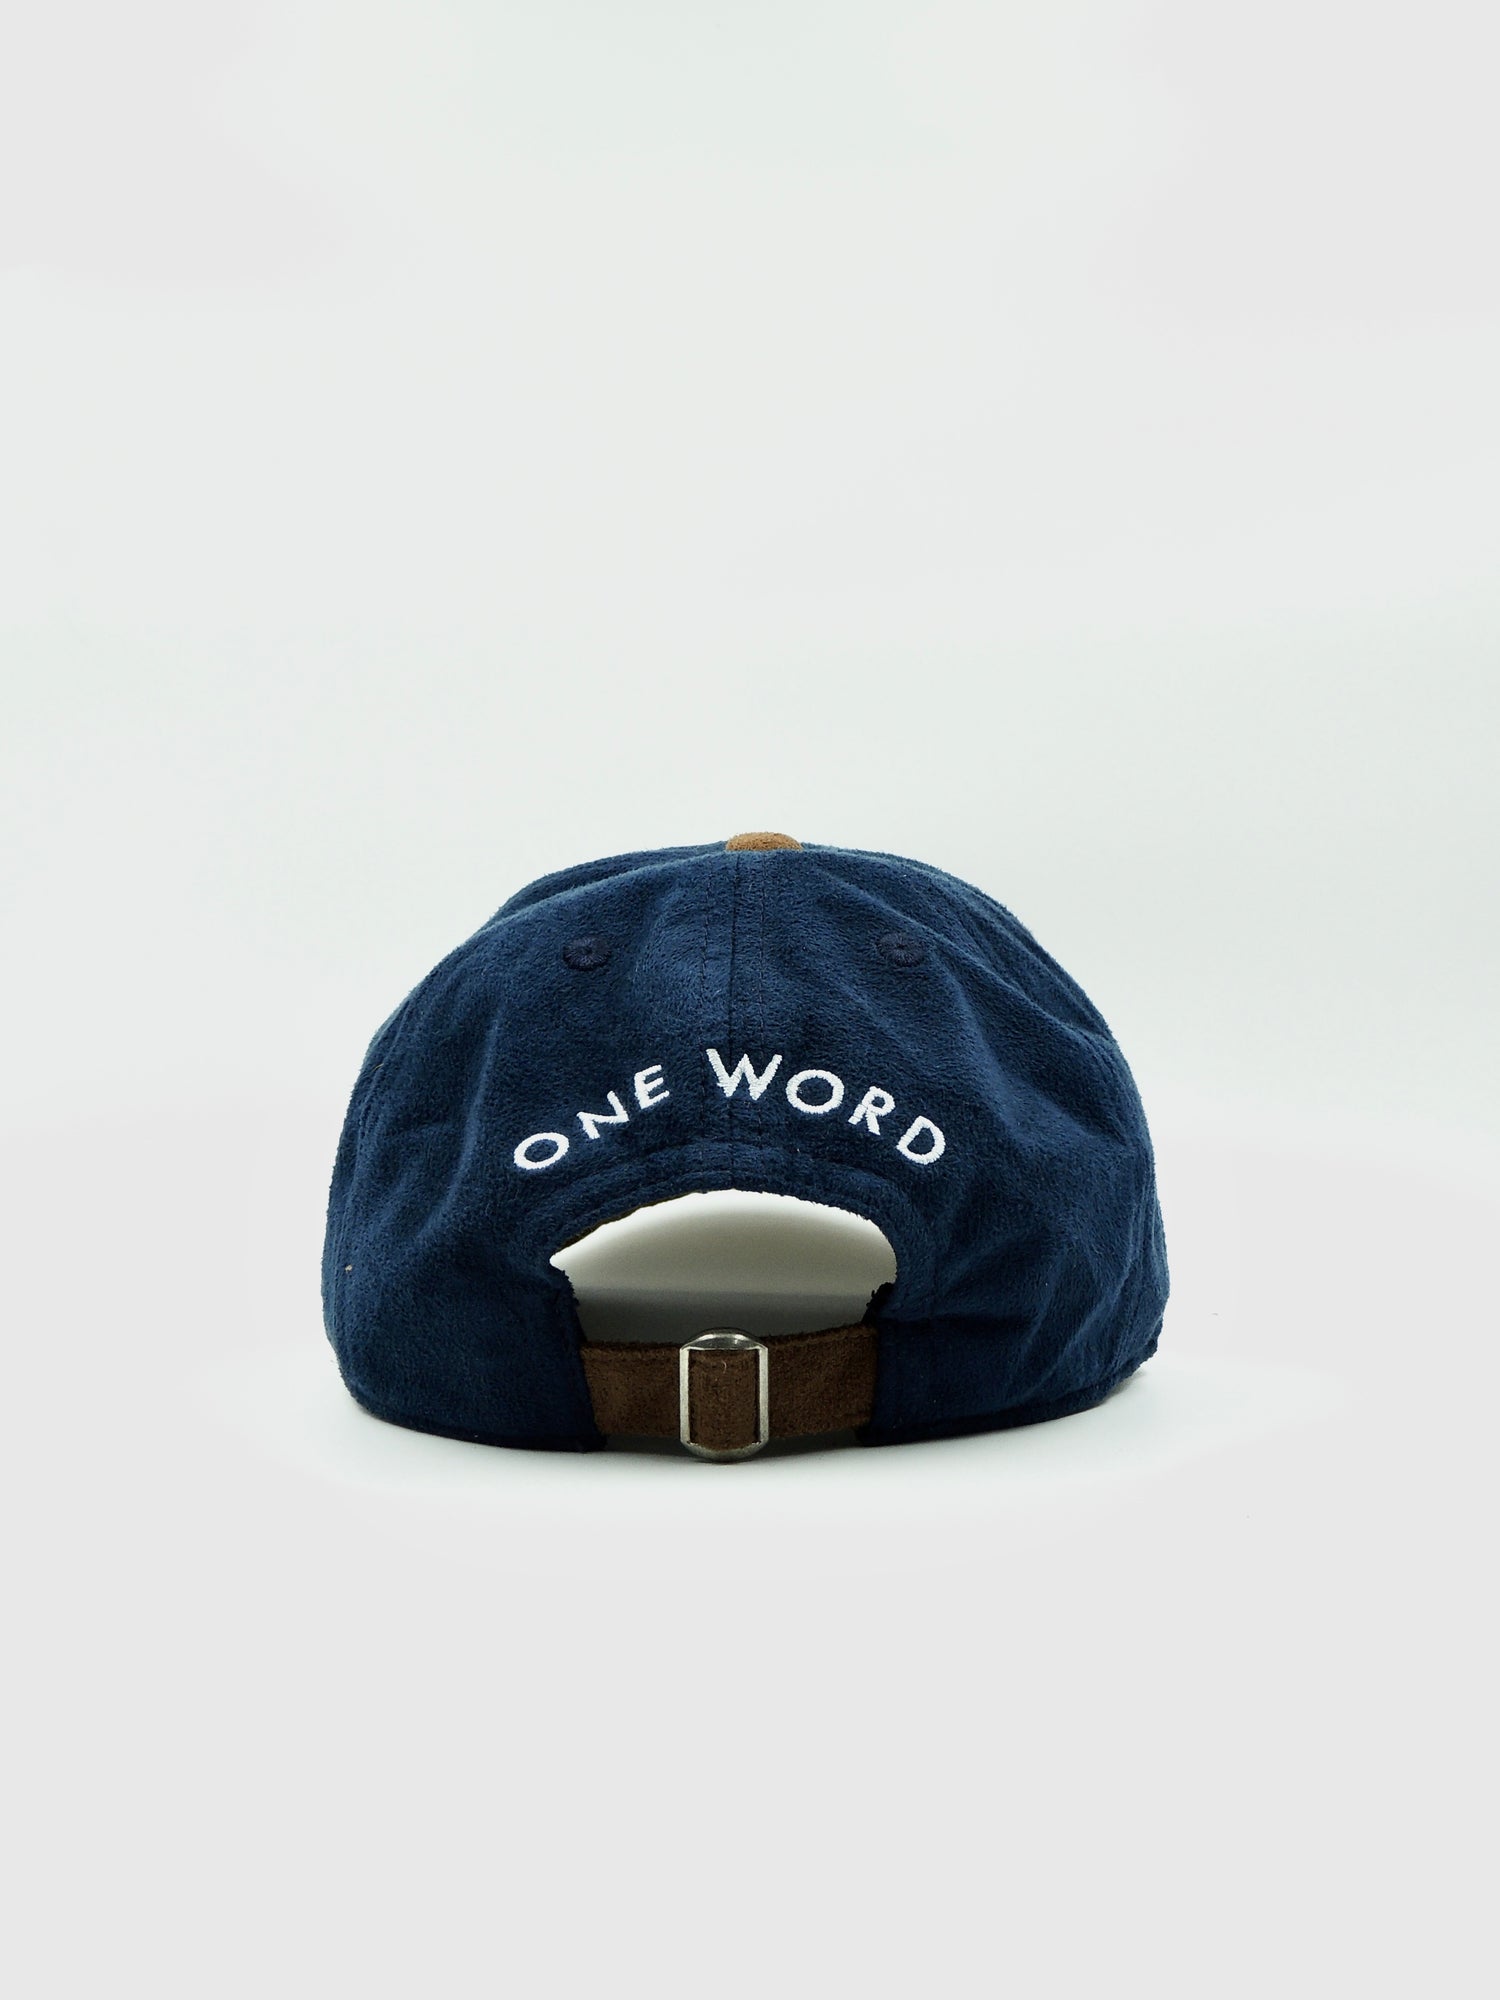 [keyword]-One Word StoreLoosen Up - Suede Hat